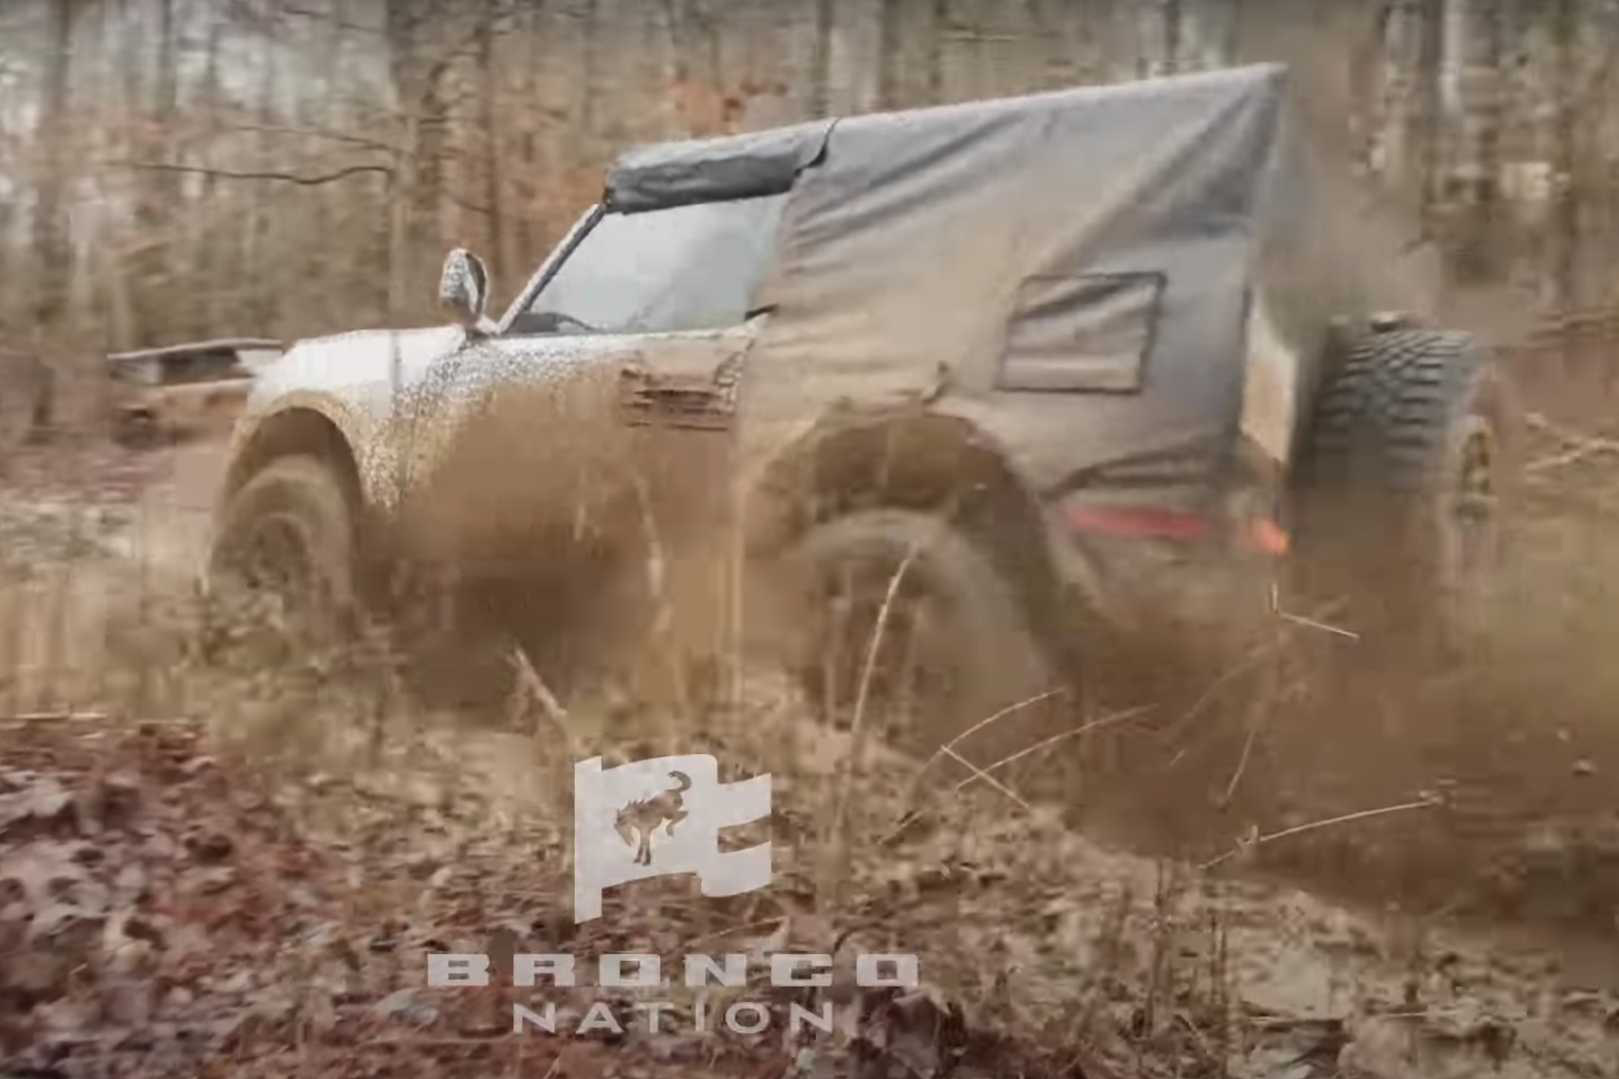 Ford Bronco khoe khéo khả năng lội bùn như G-Class, Defender